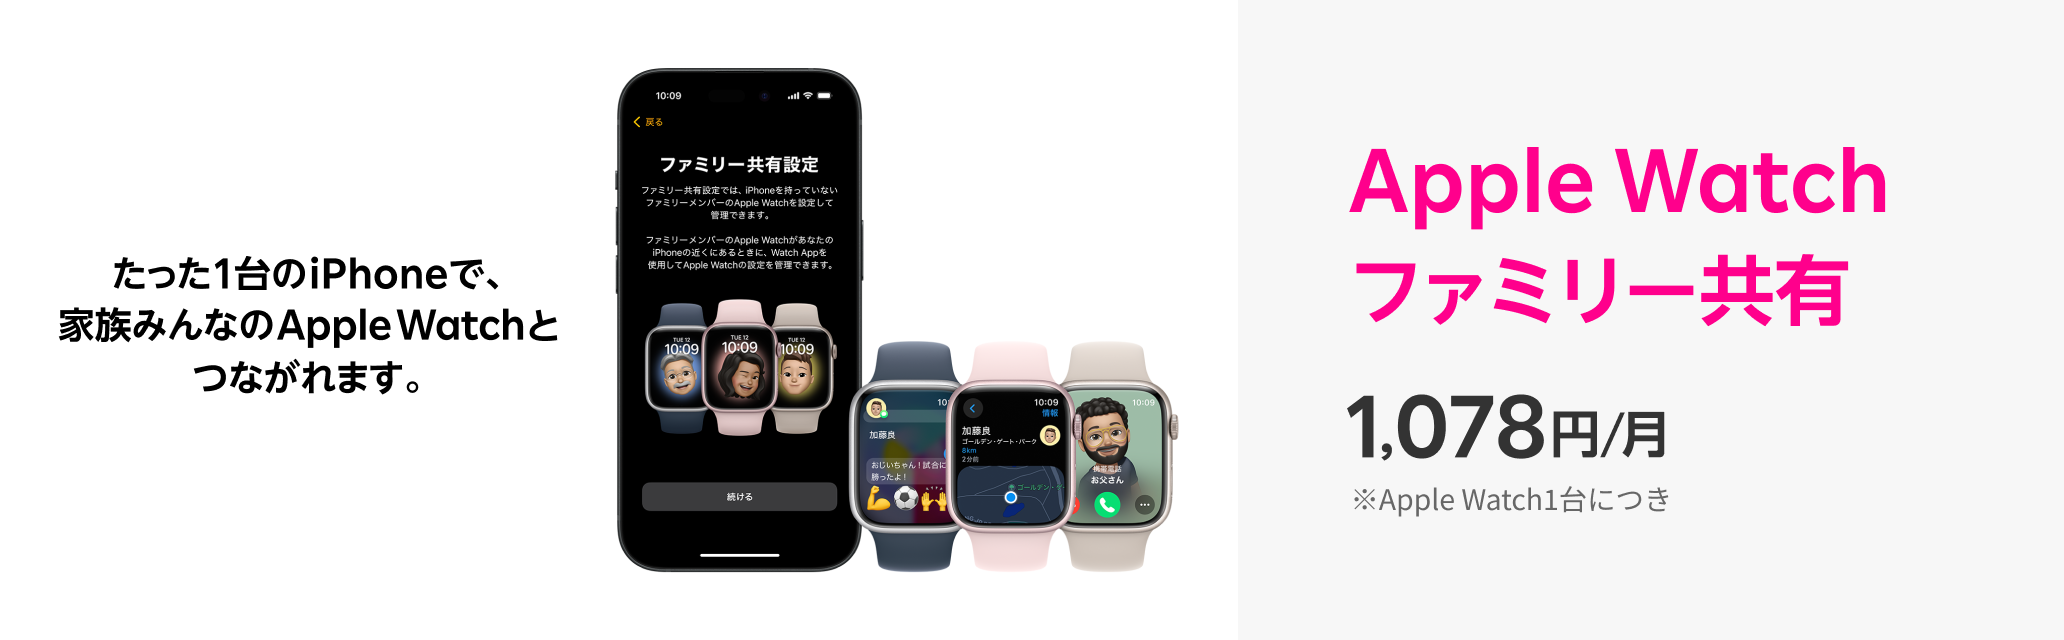 たった1台のiPhoneで、家族みんなのApple Watchとつながれます。Apple Watch ファミリー共有 1,078円/月 ※Apple Watch1台につき